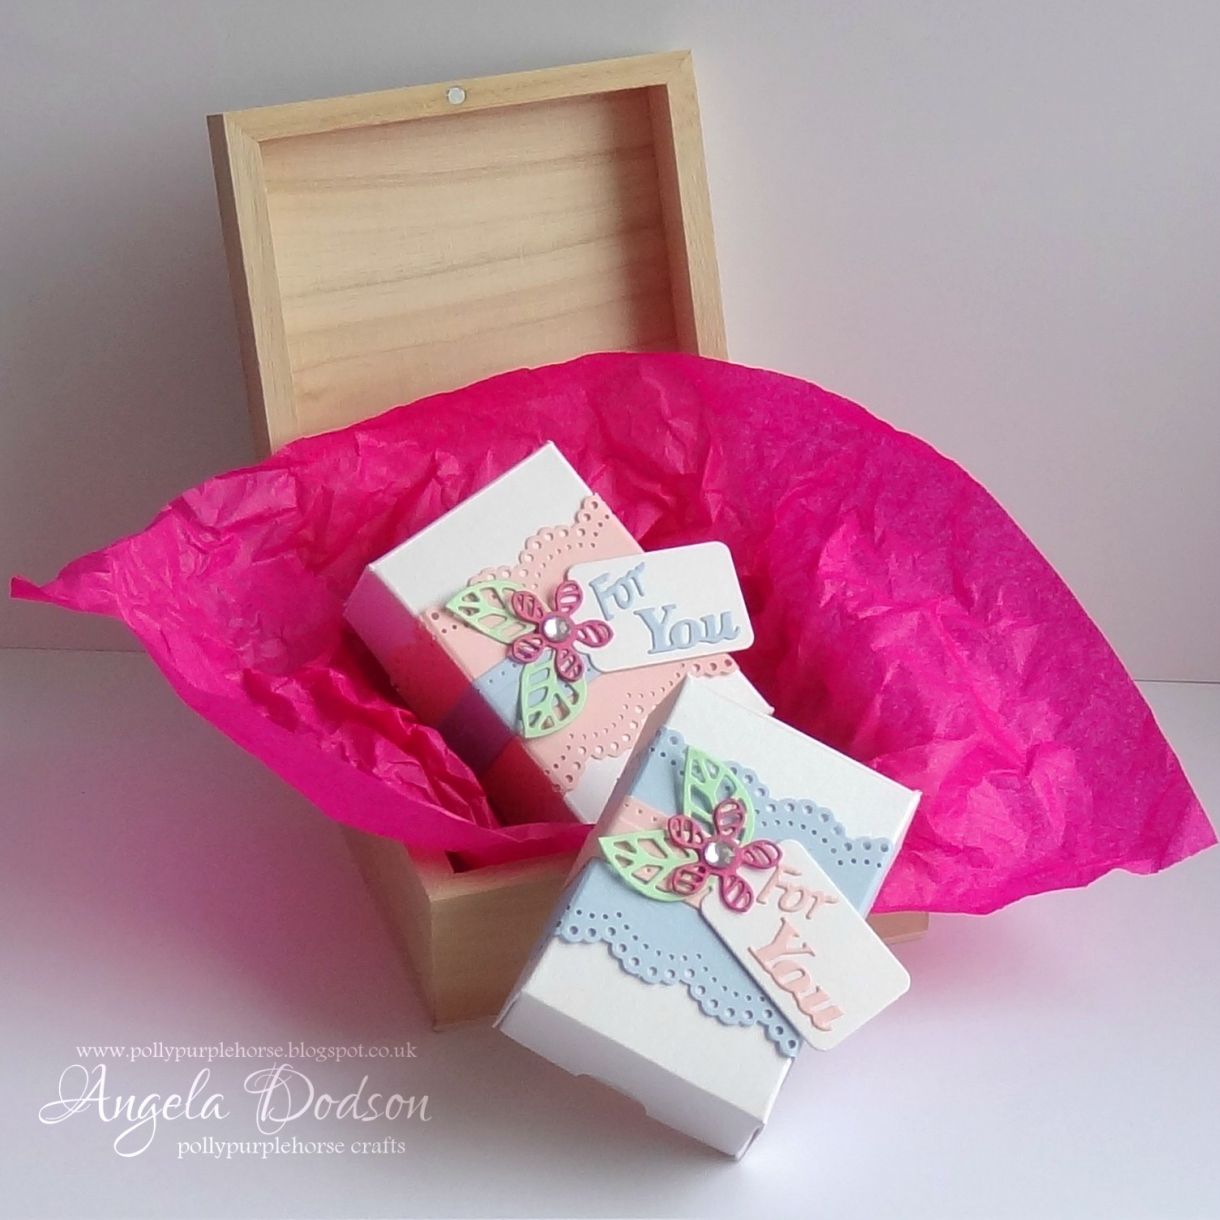 DIY Self-Opening Gift Box - Karen Kavett